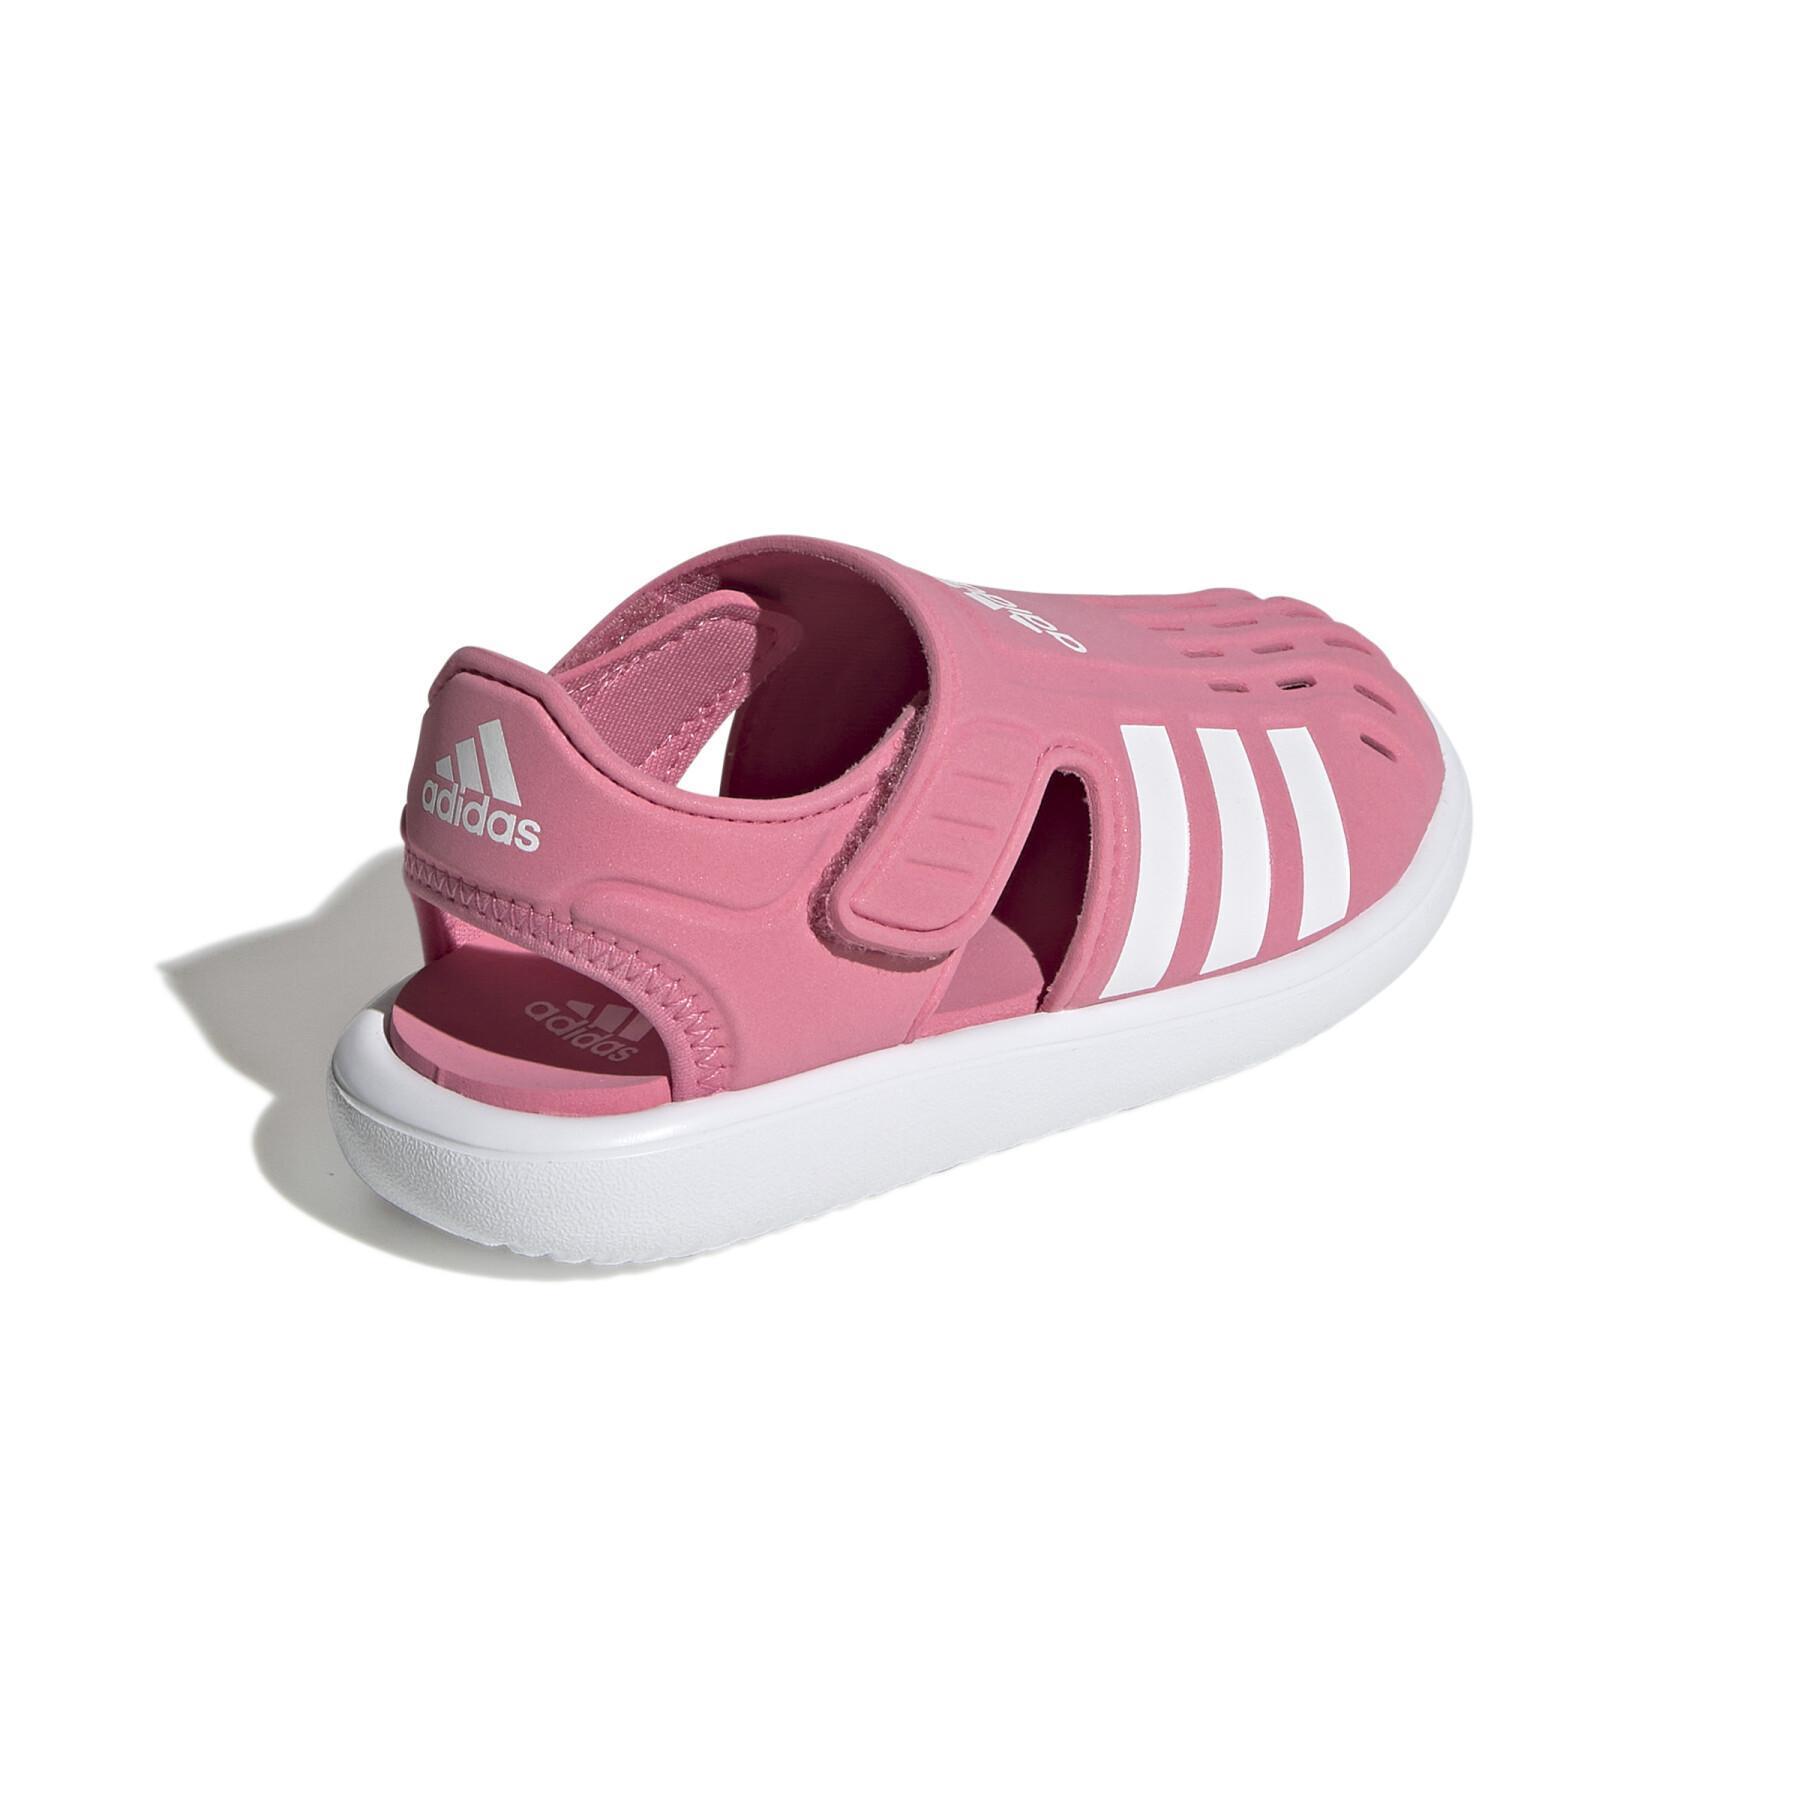 Sandalias para niños adidas Summer Closed Toe Water